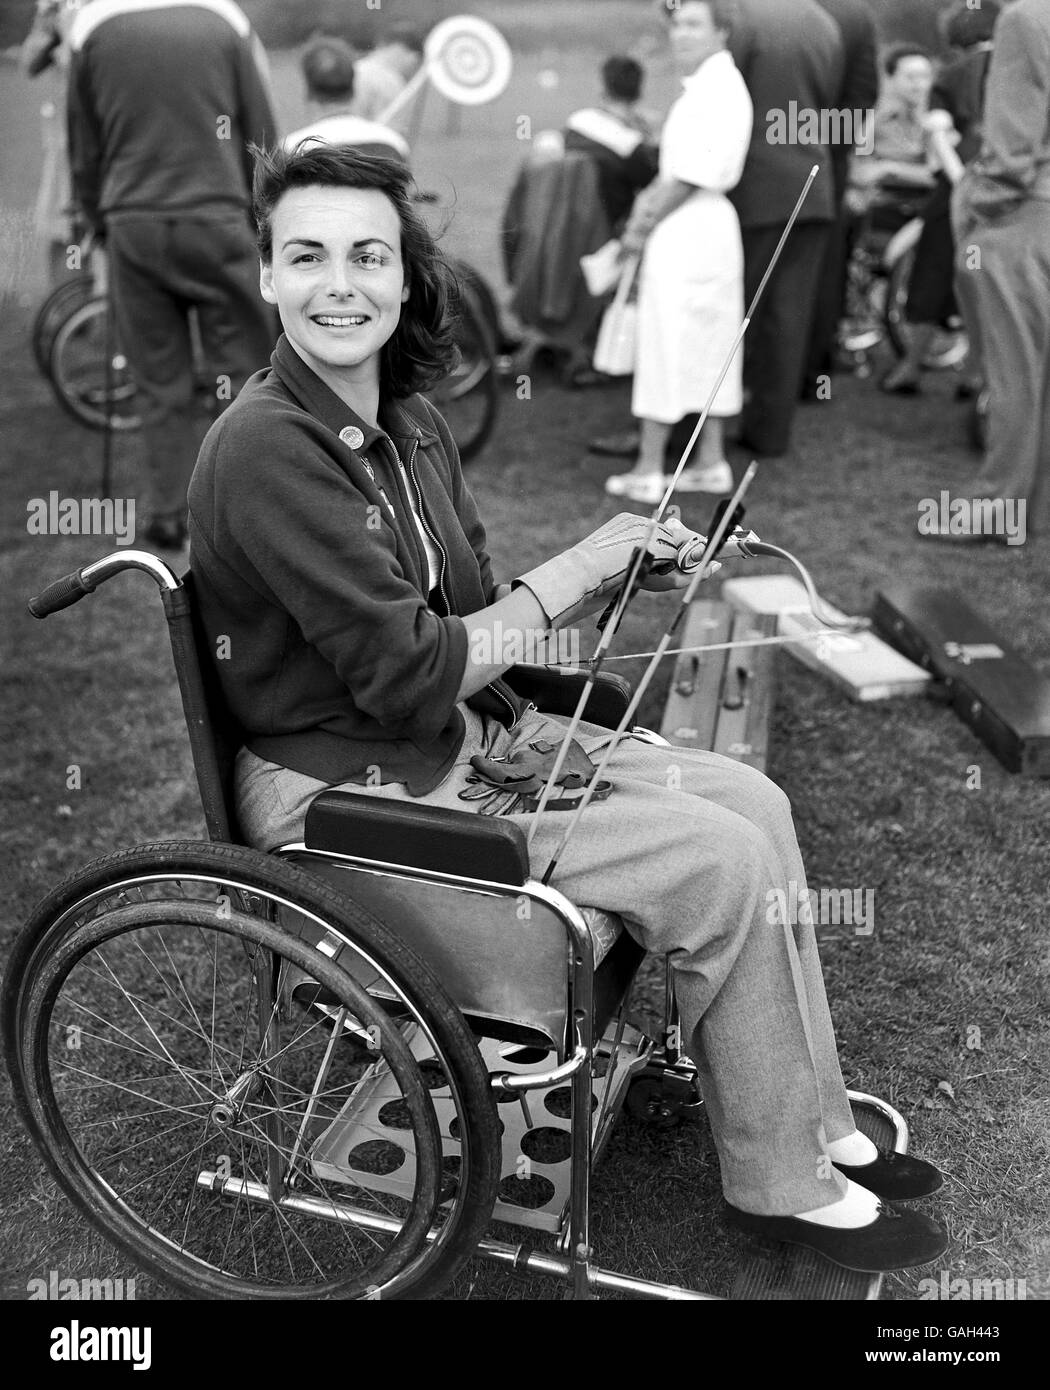 Stoke Mandeville Paralympics - Internationales Sportfestival Für Gelähmte. Die Fernsehpersönlichkeit Pamela Russell, die beim Bogenschießturnier antritt Stockfoto